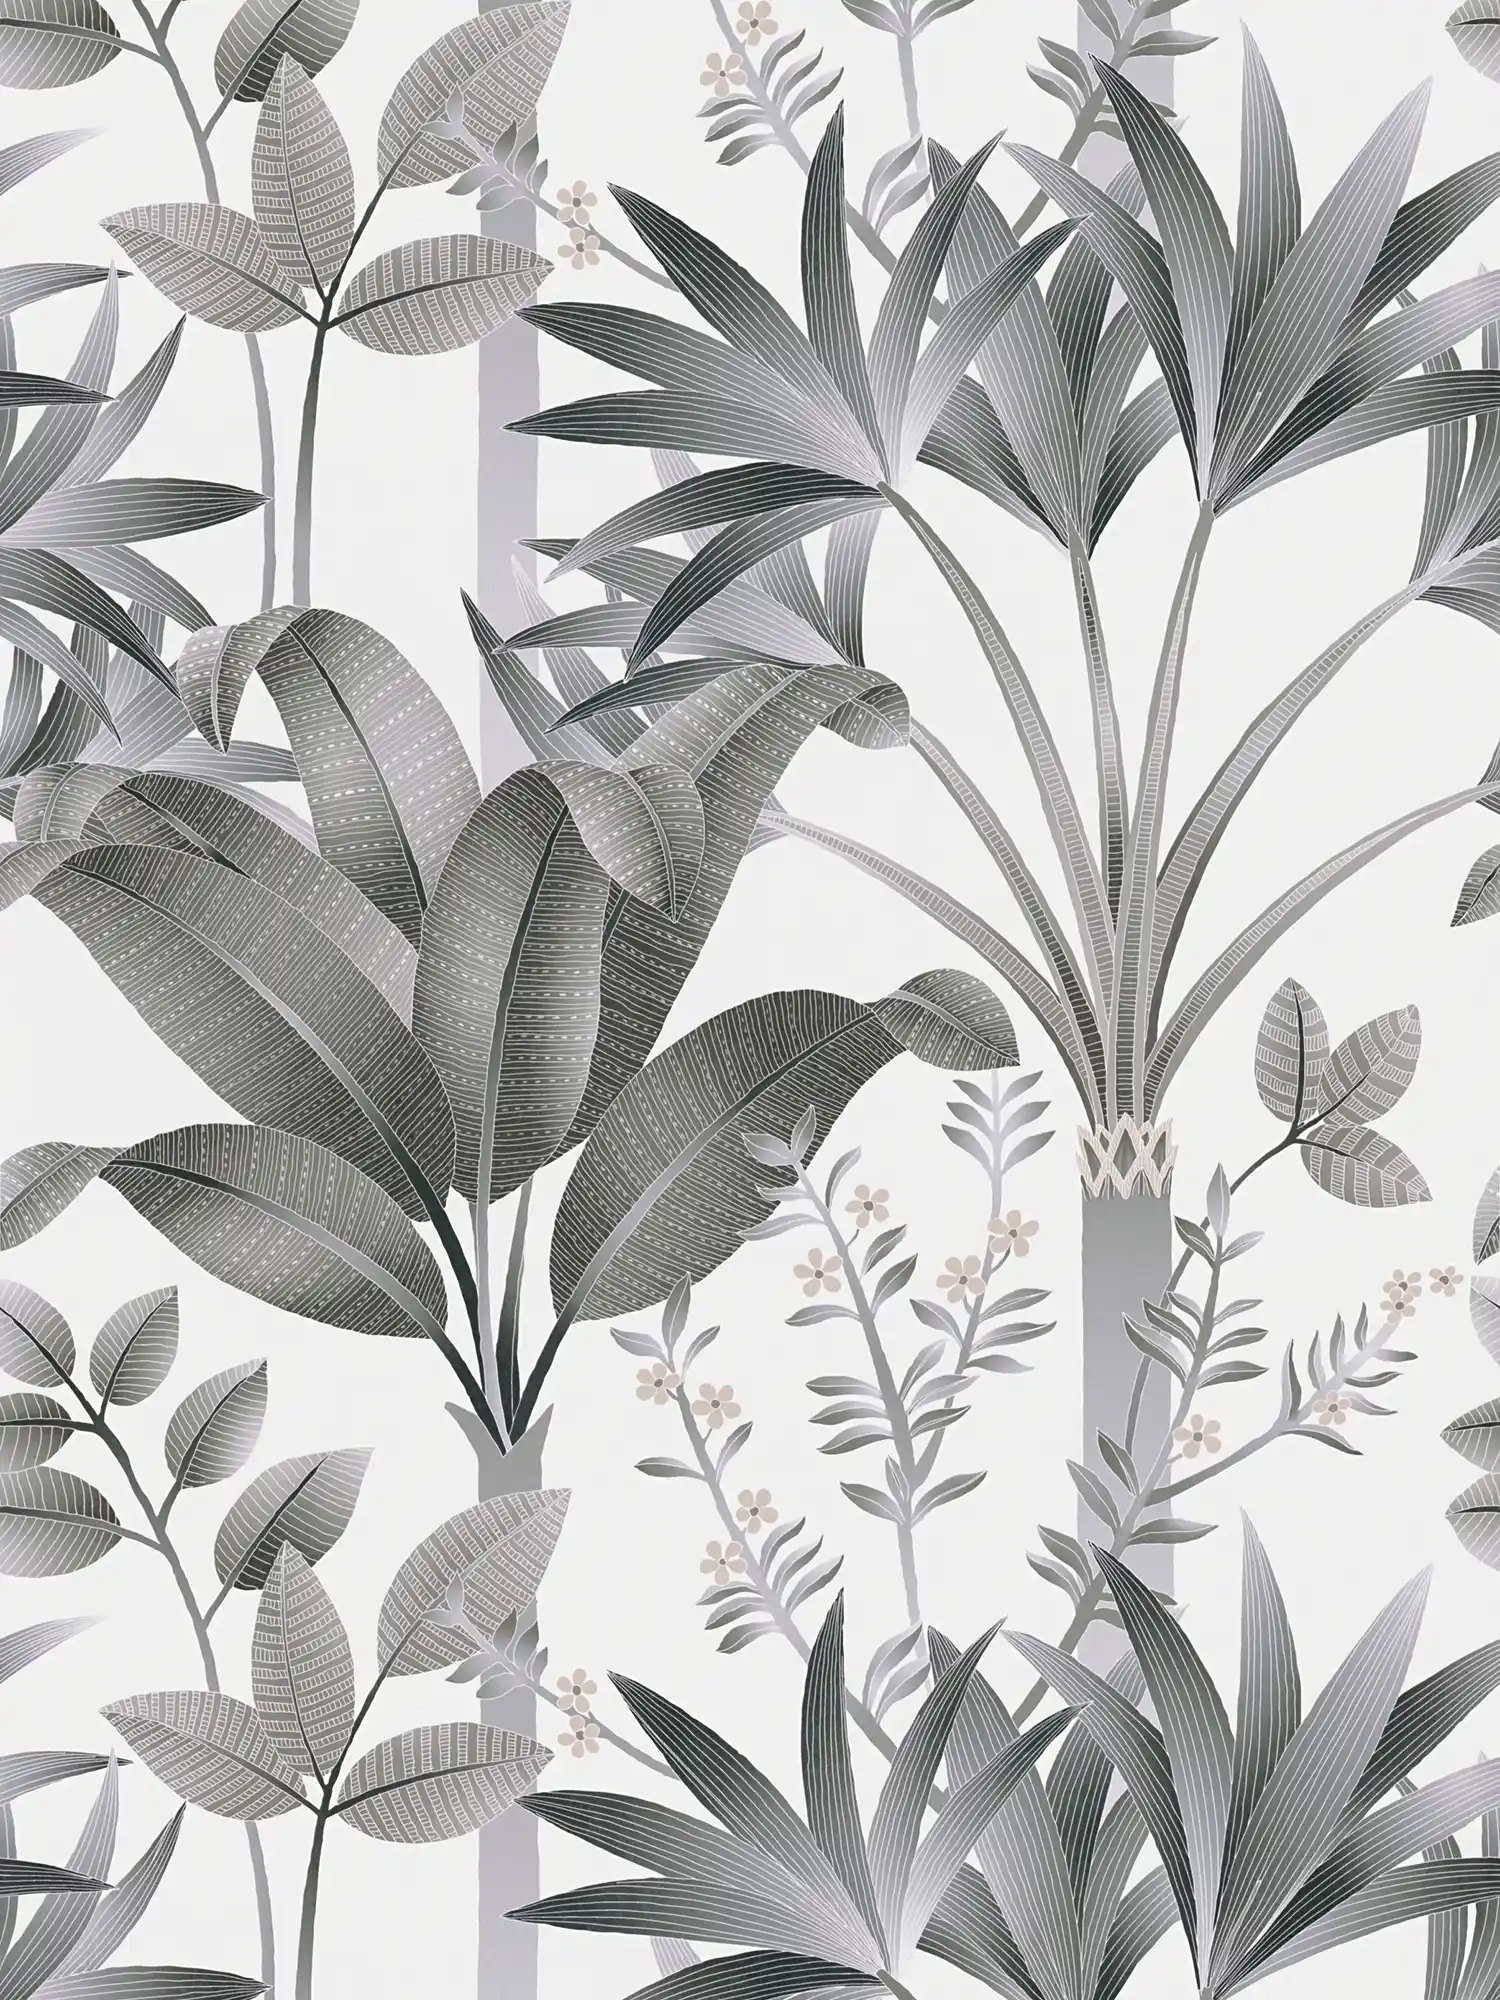         Papier peint intissé floral avec motif de feuilles - gris, noir, blanc
    